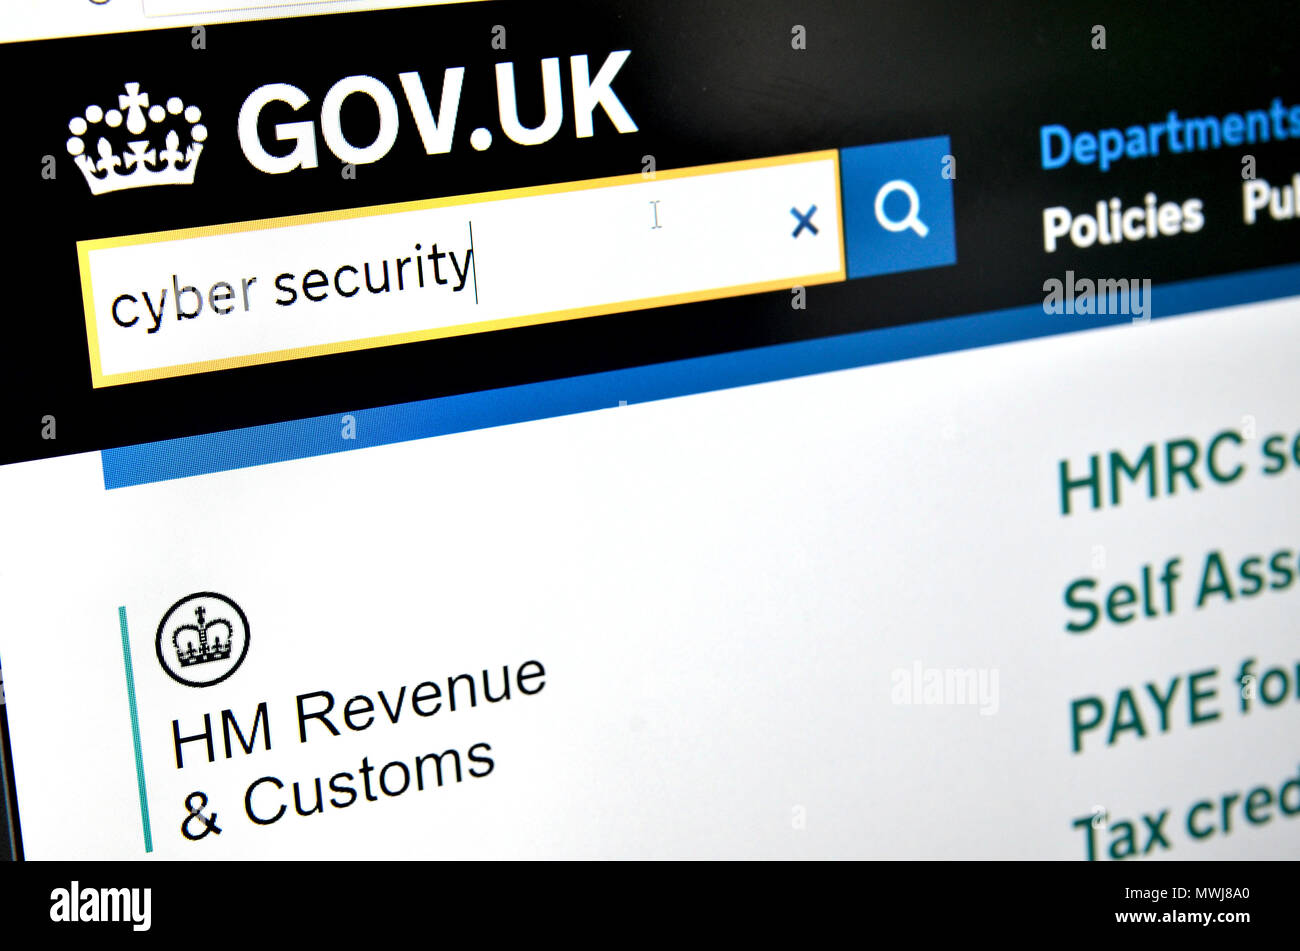 Gobierno británico HMRC impuesto sitio web: Cyber security Foto de stock